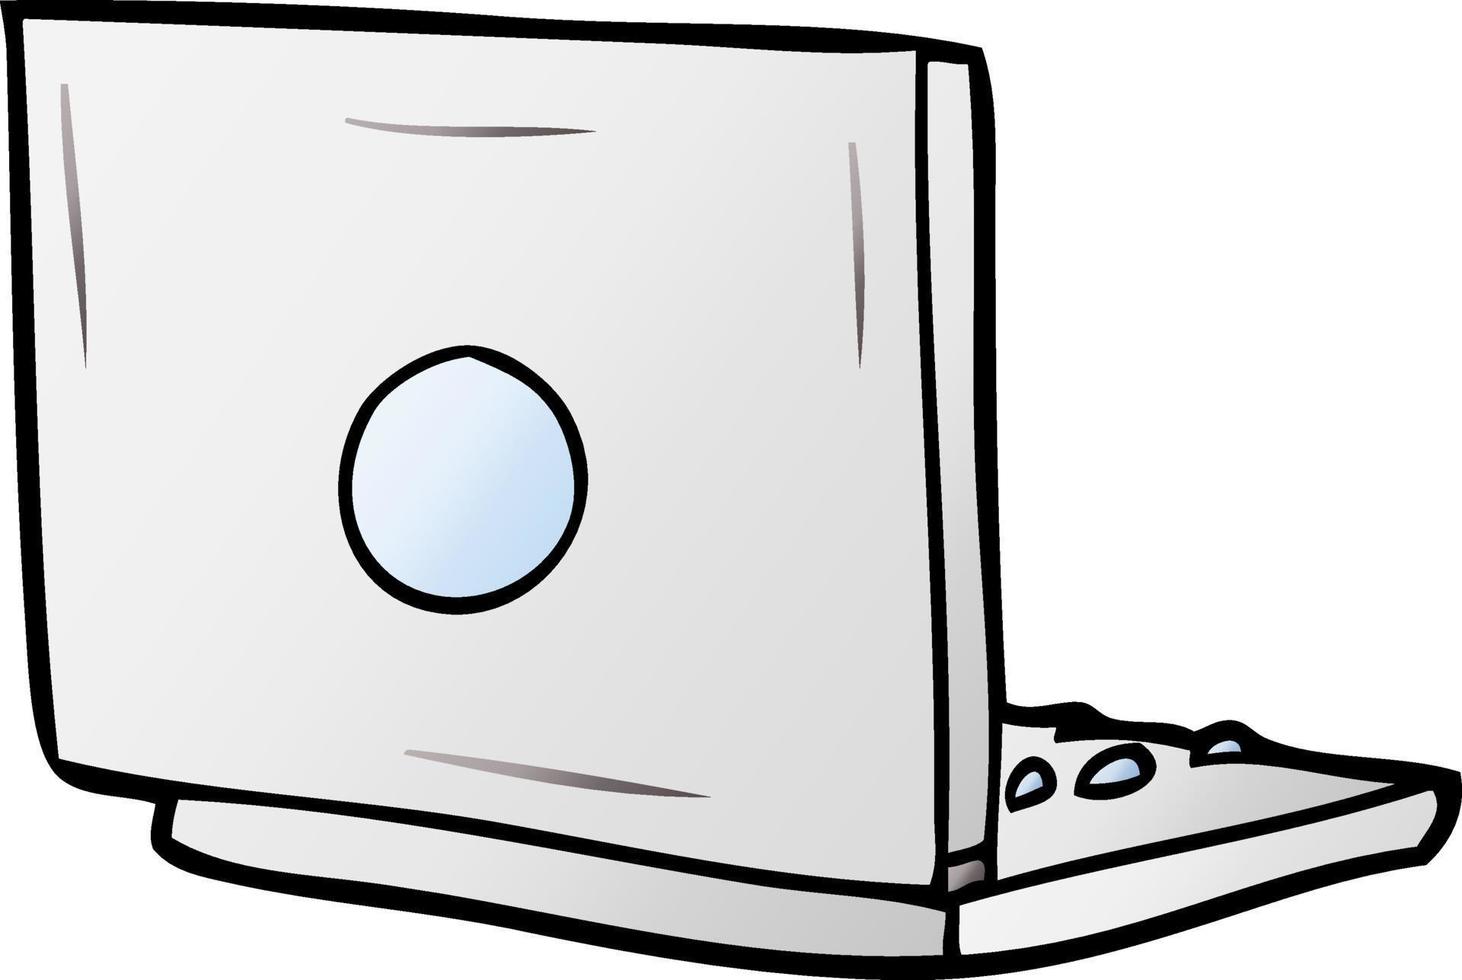 ordinateur portable de dessin animé vecteur